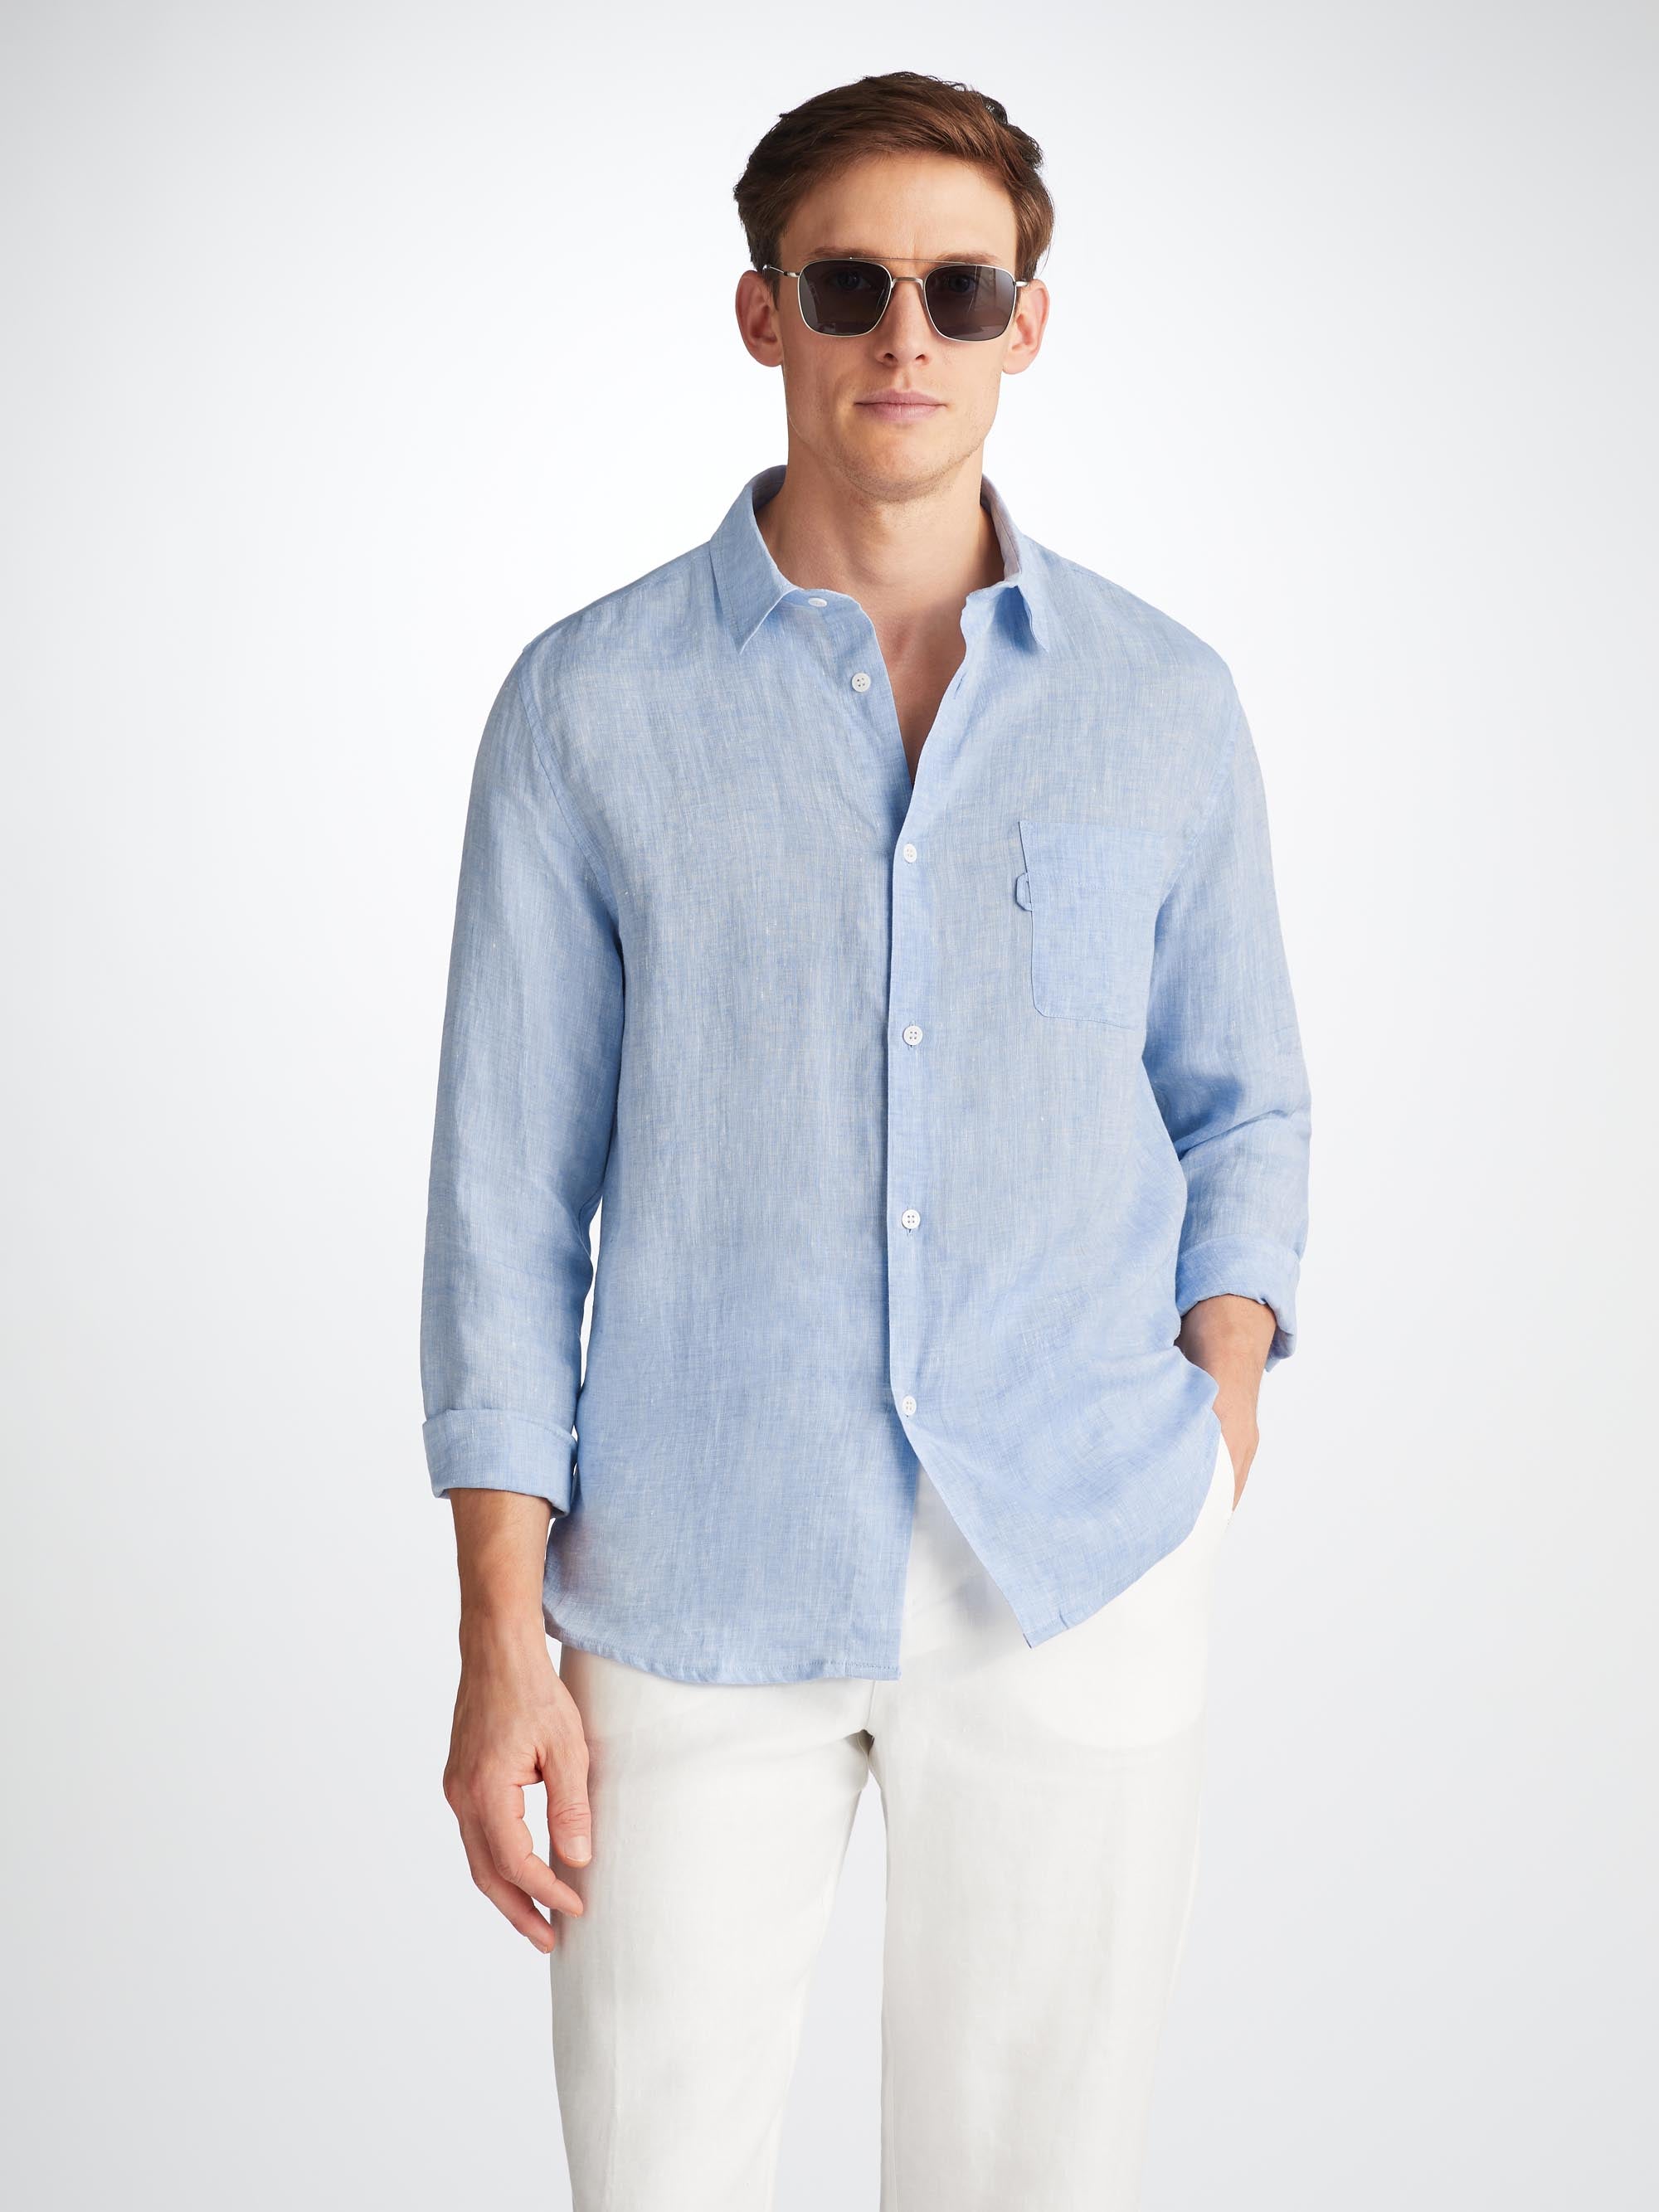 Men's Shirt Monaco Linen Blue